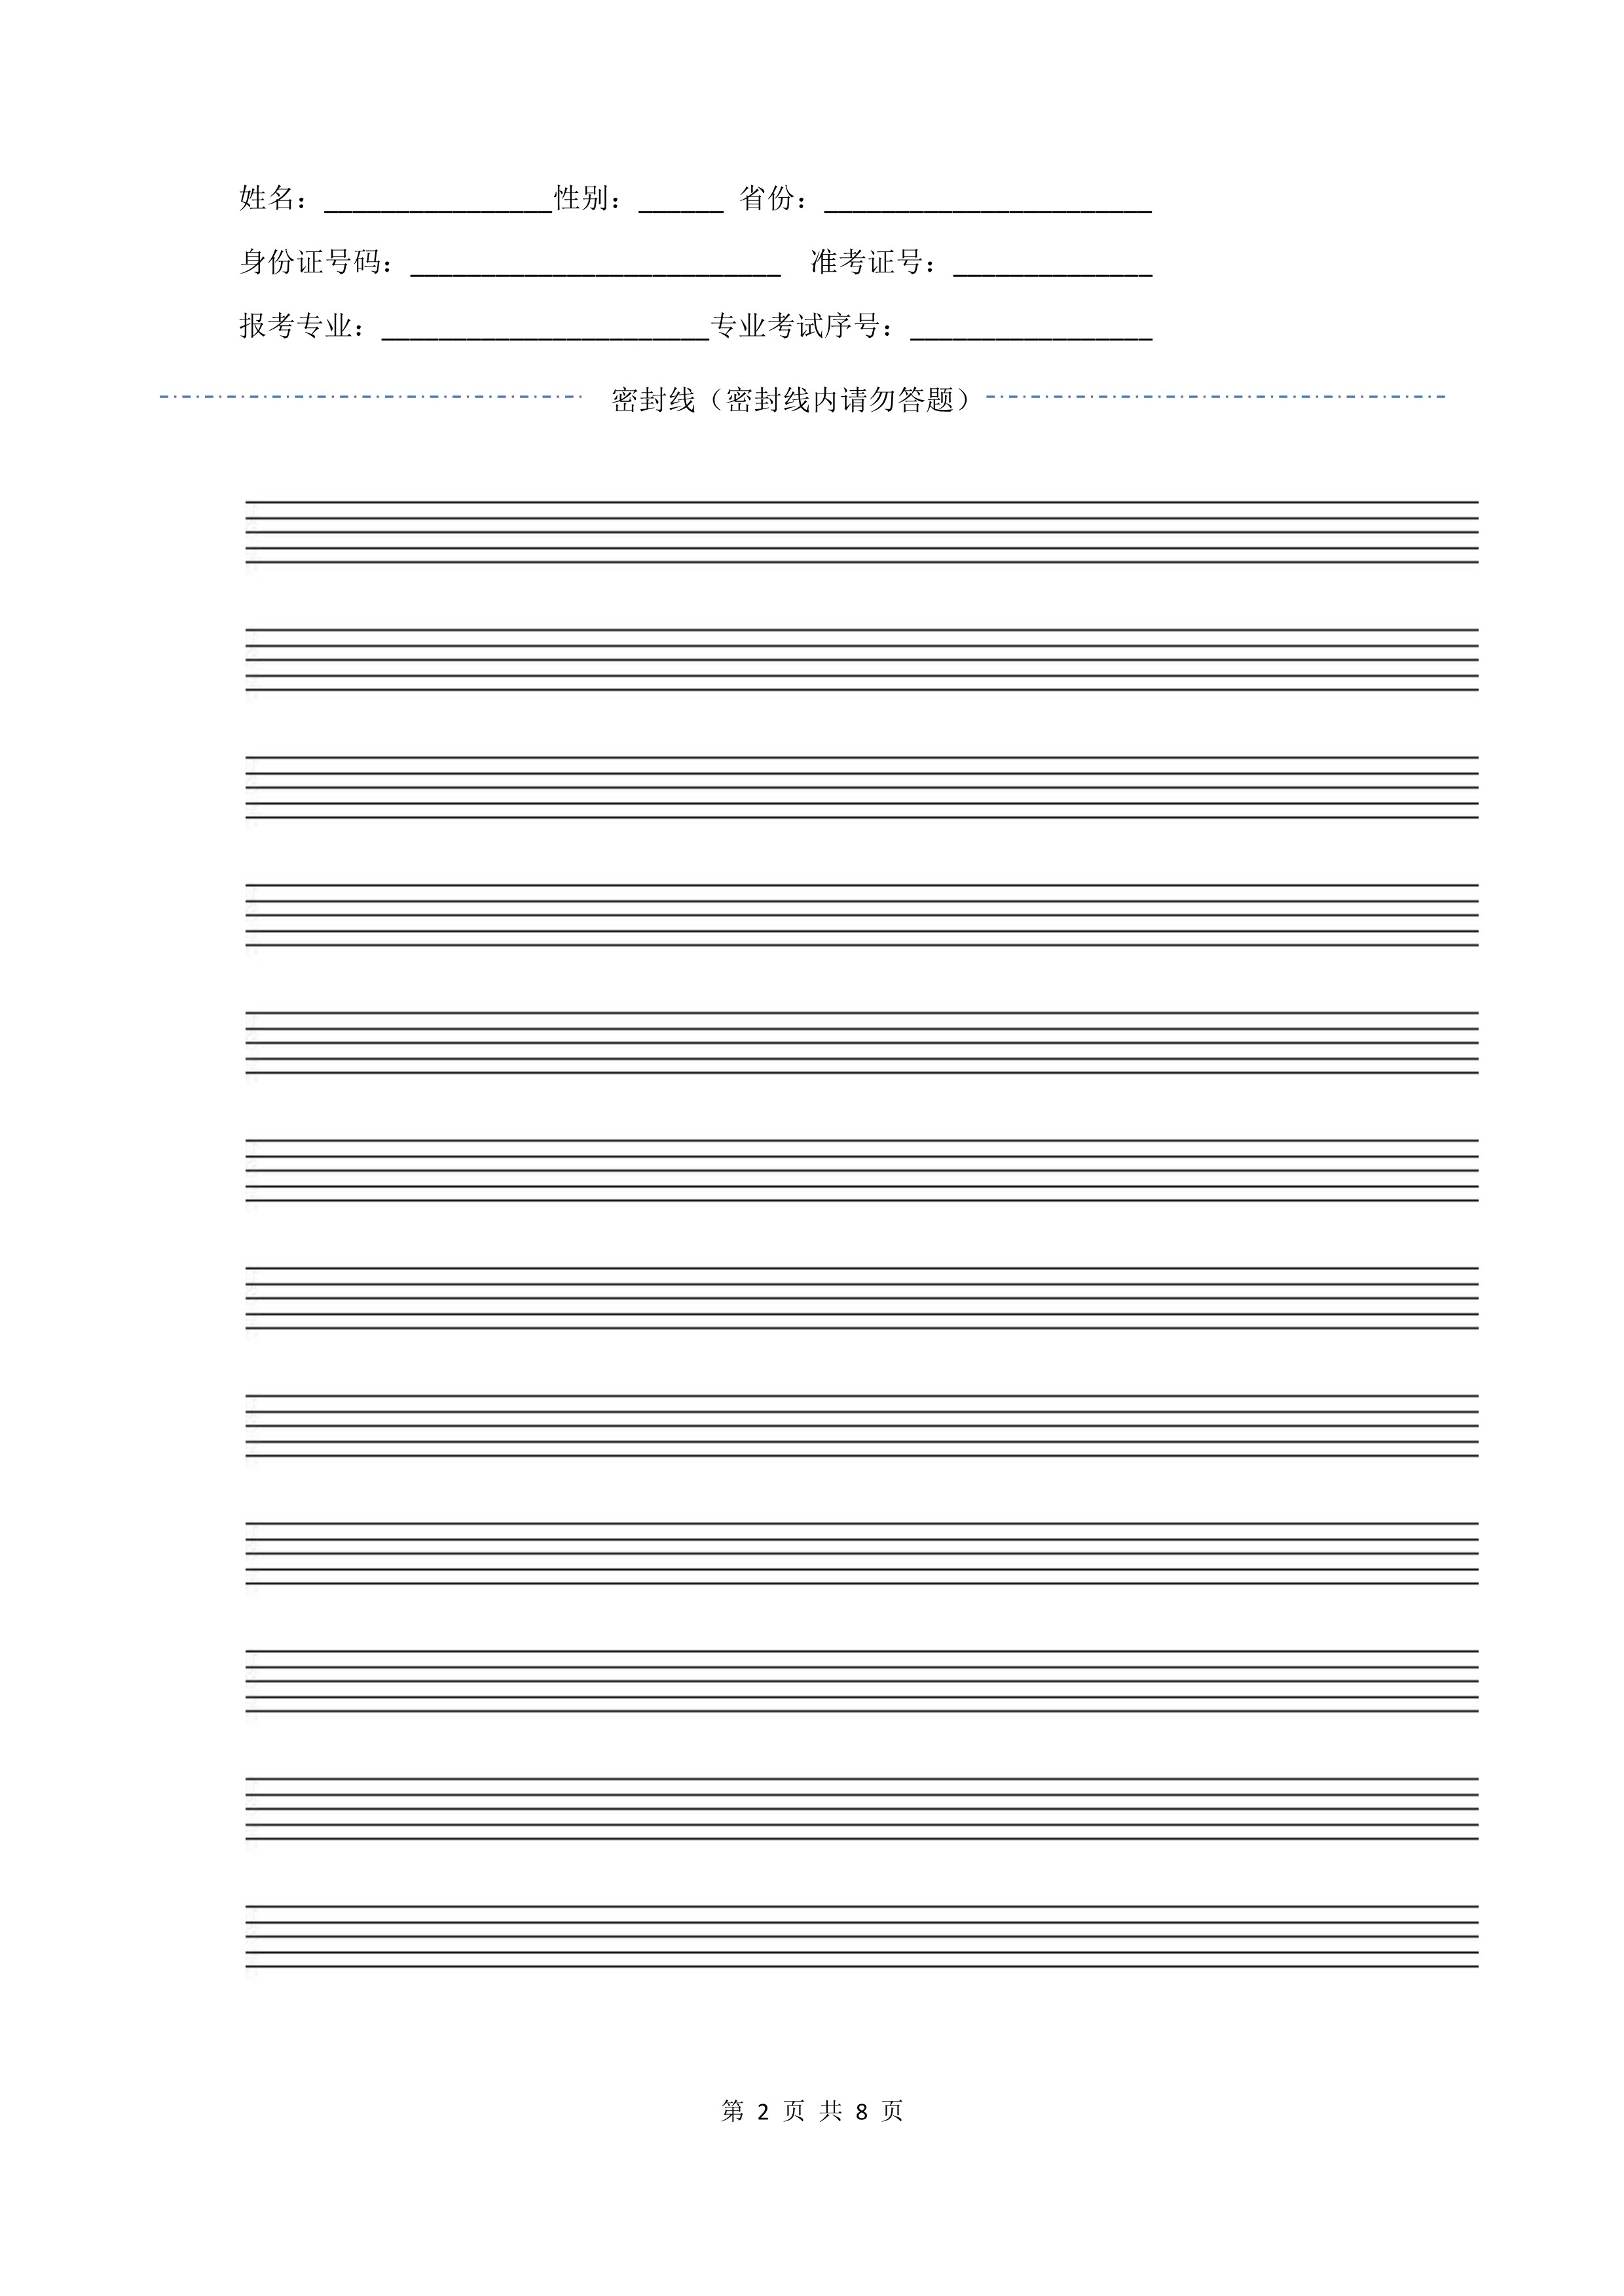 南京艺术学院2022年本科招生作曲与作曲技术理论、作曲与作曲技术理论（计算机作曲）专业《歌曲写作》科目考试答题纸及草稿纸_2.jpg